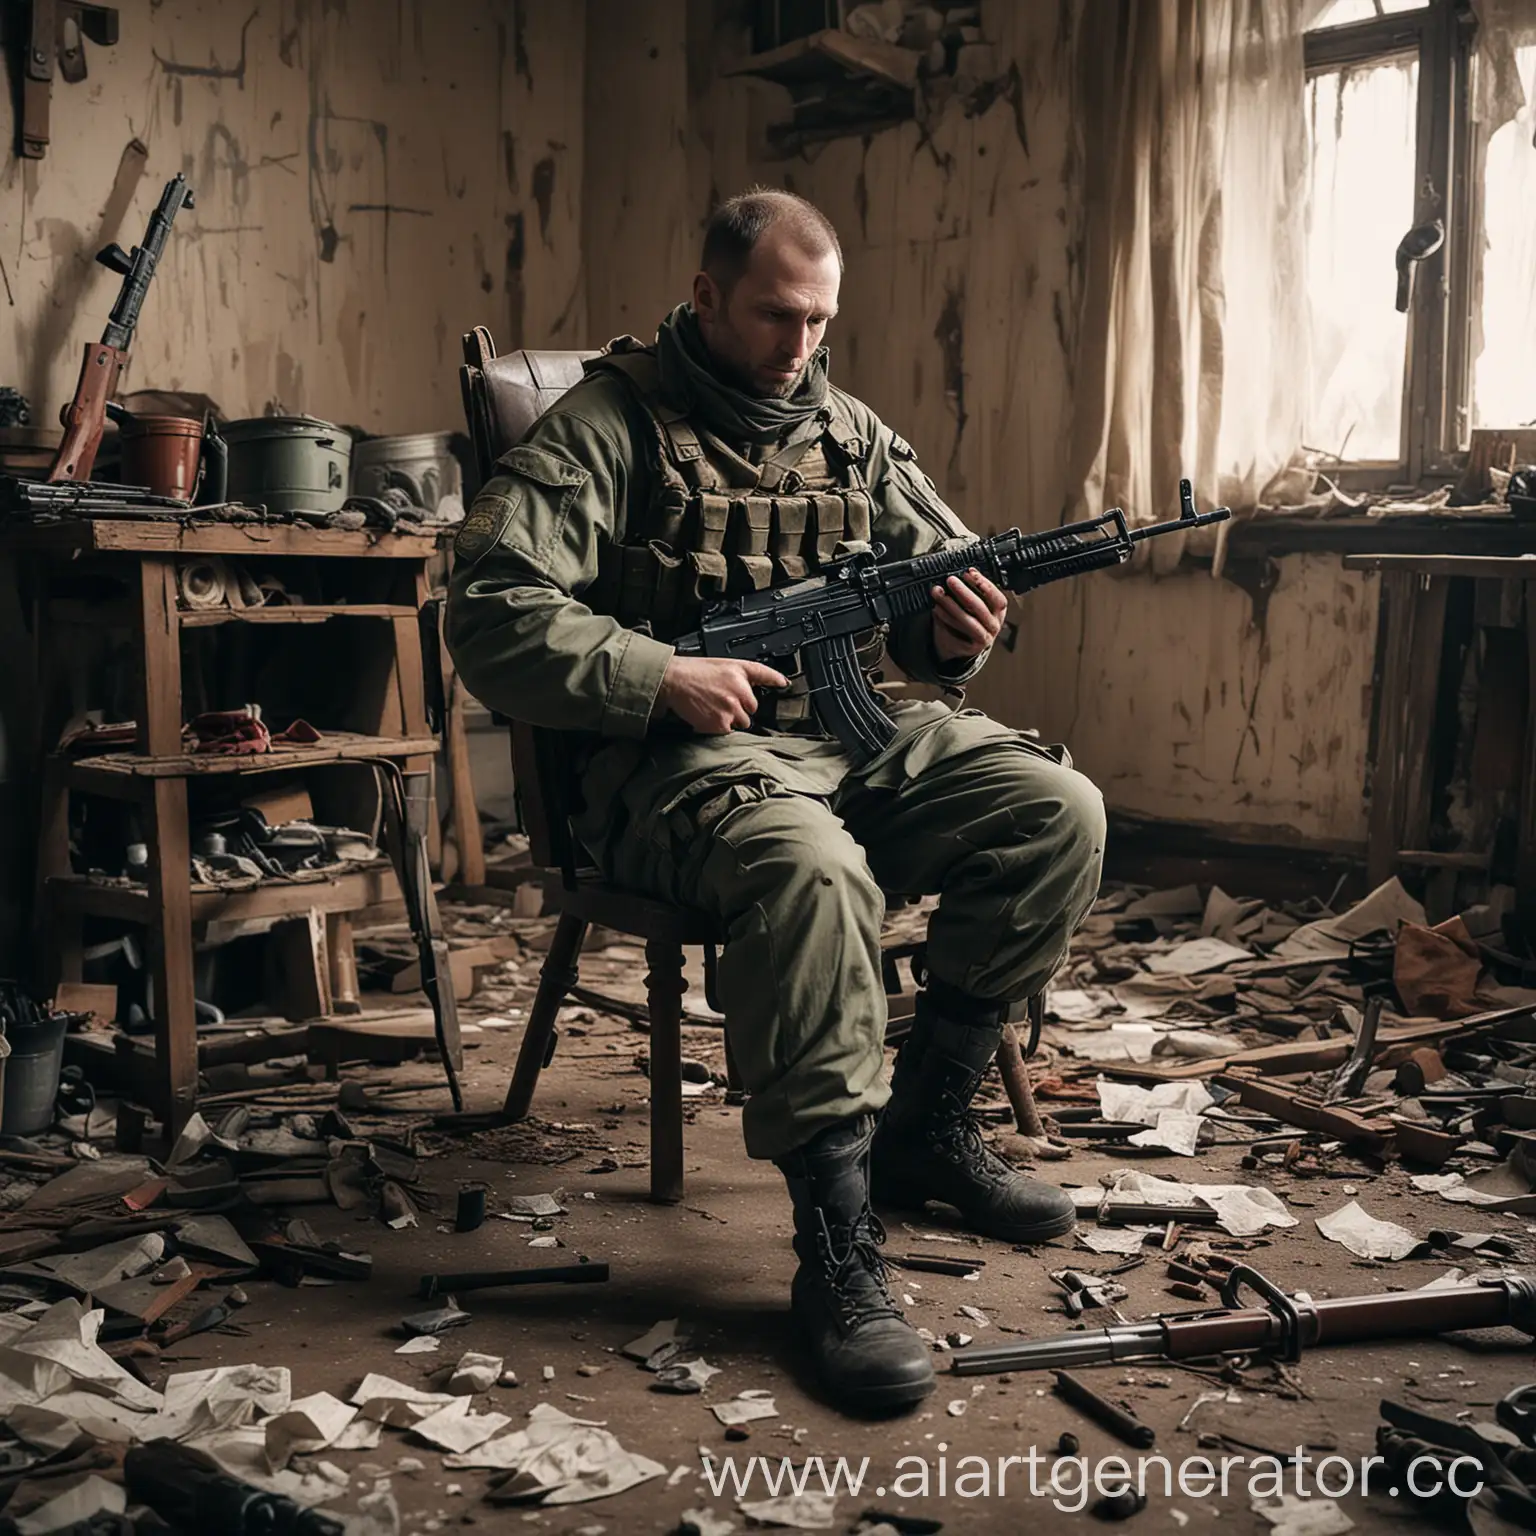 Постапокалипсис заброшенный дом изнутри, в нем на стуле сидит мужчина в военной форме и чистит оружие АК-74
